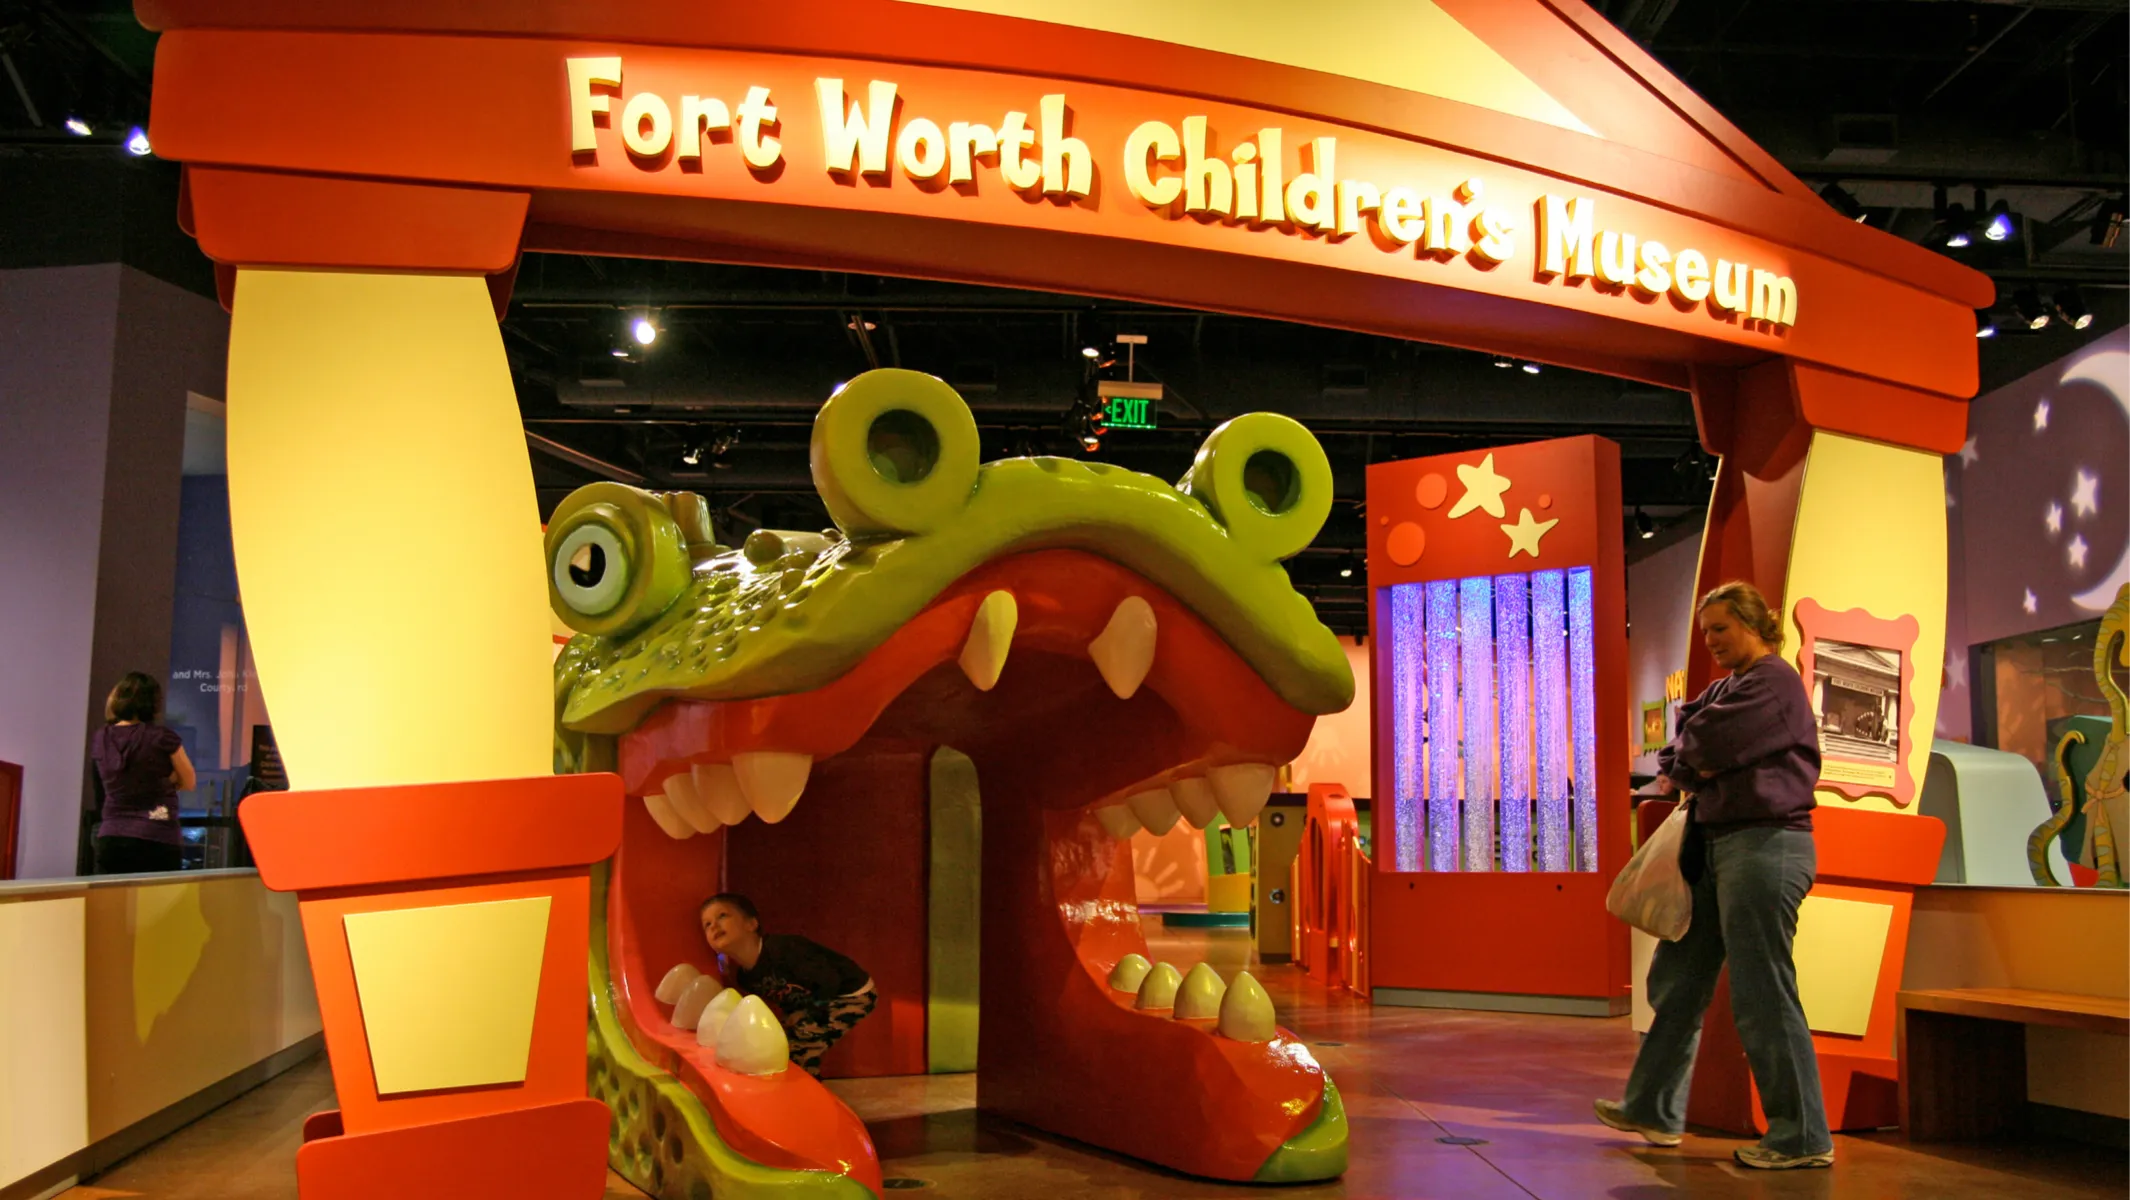 Fort Worth Children's Museum exhibit of large alligator